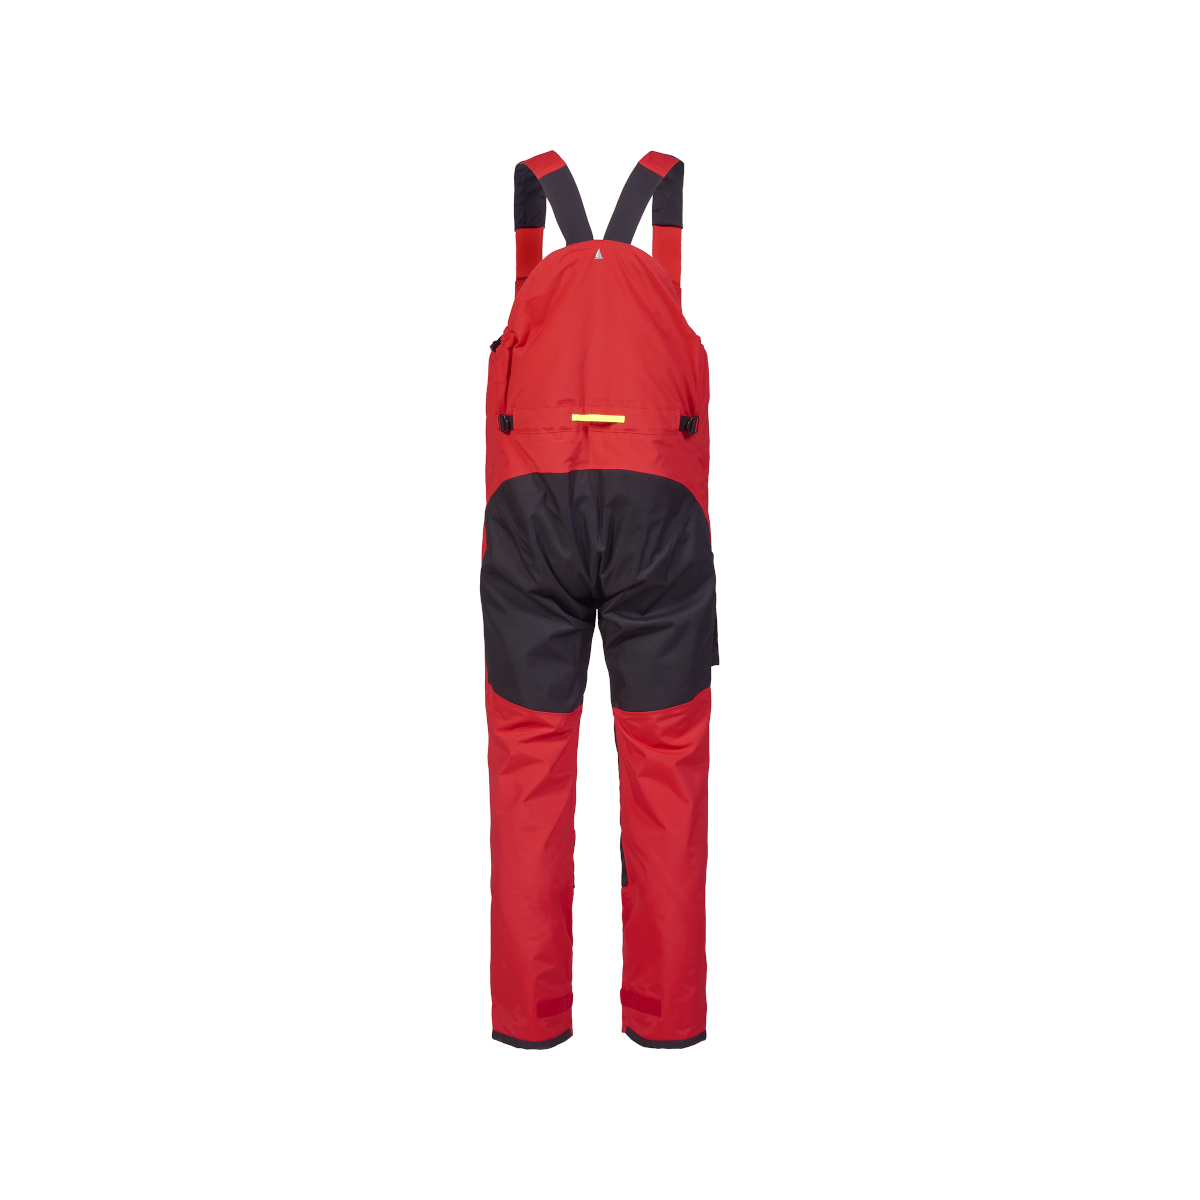 Musto BR2 pantalon de navigation offshore 2.0 homme rouge, taille S